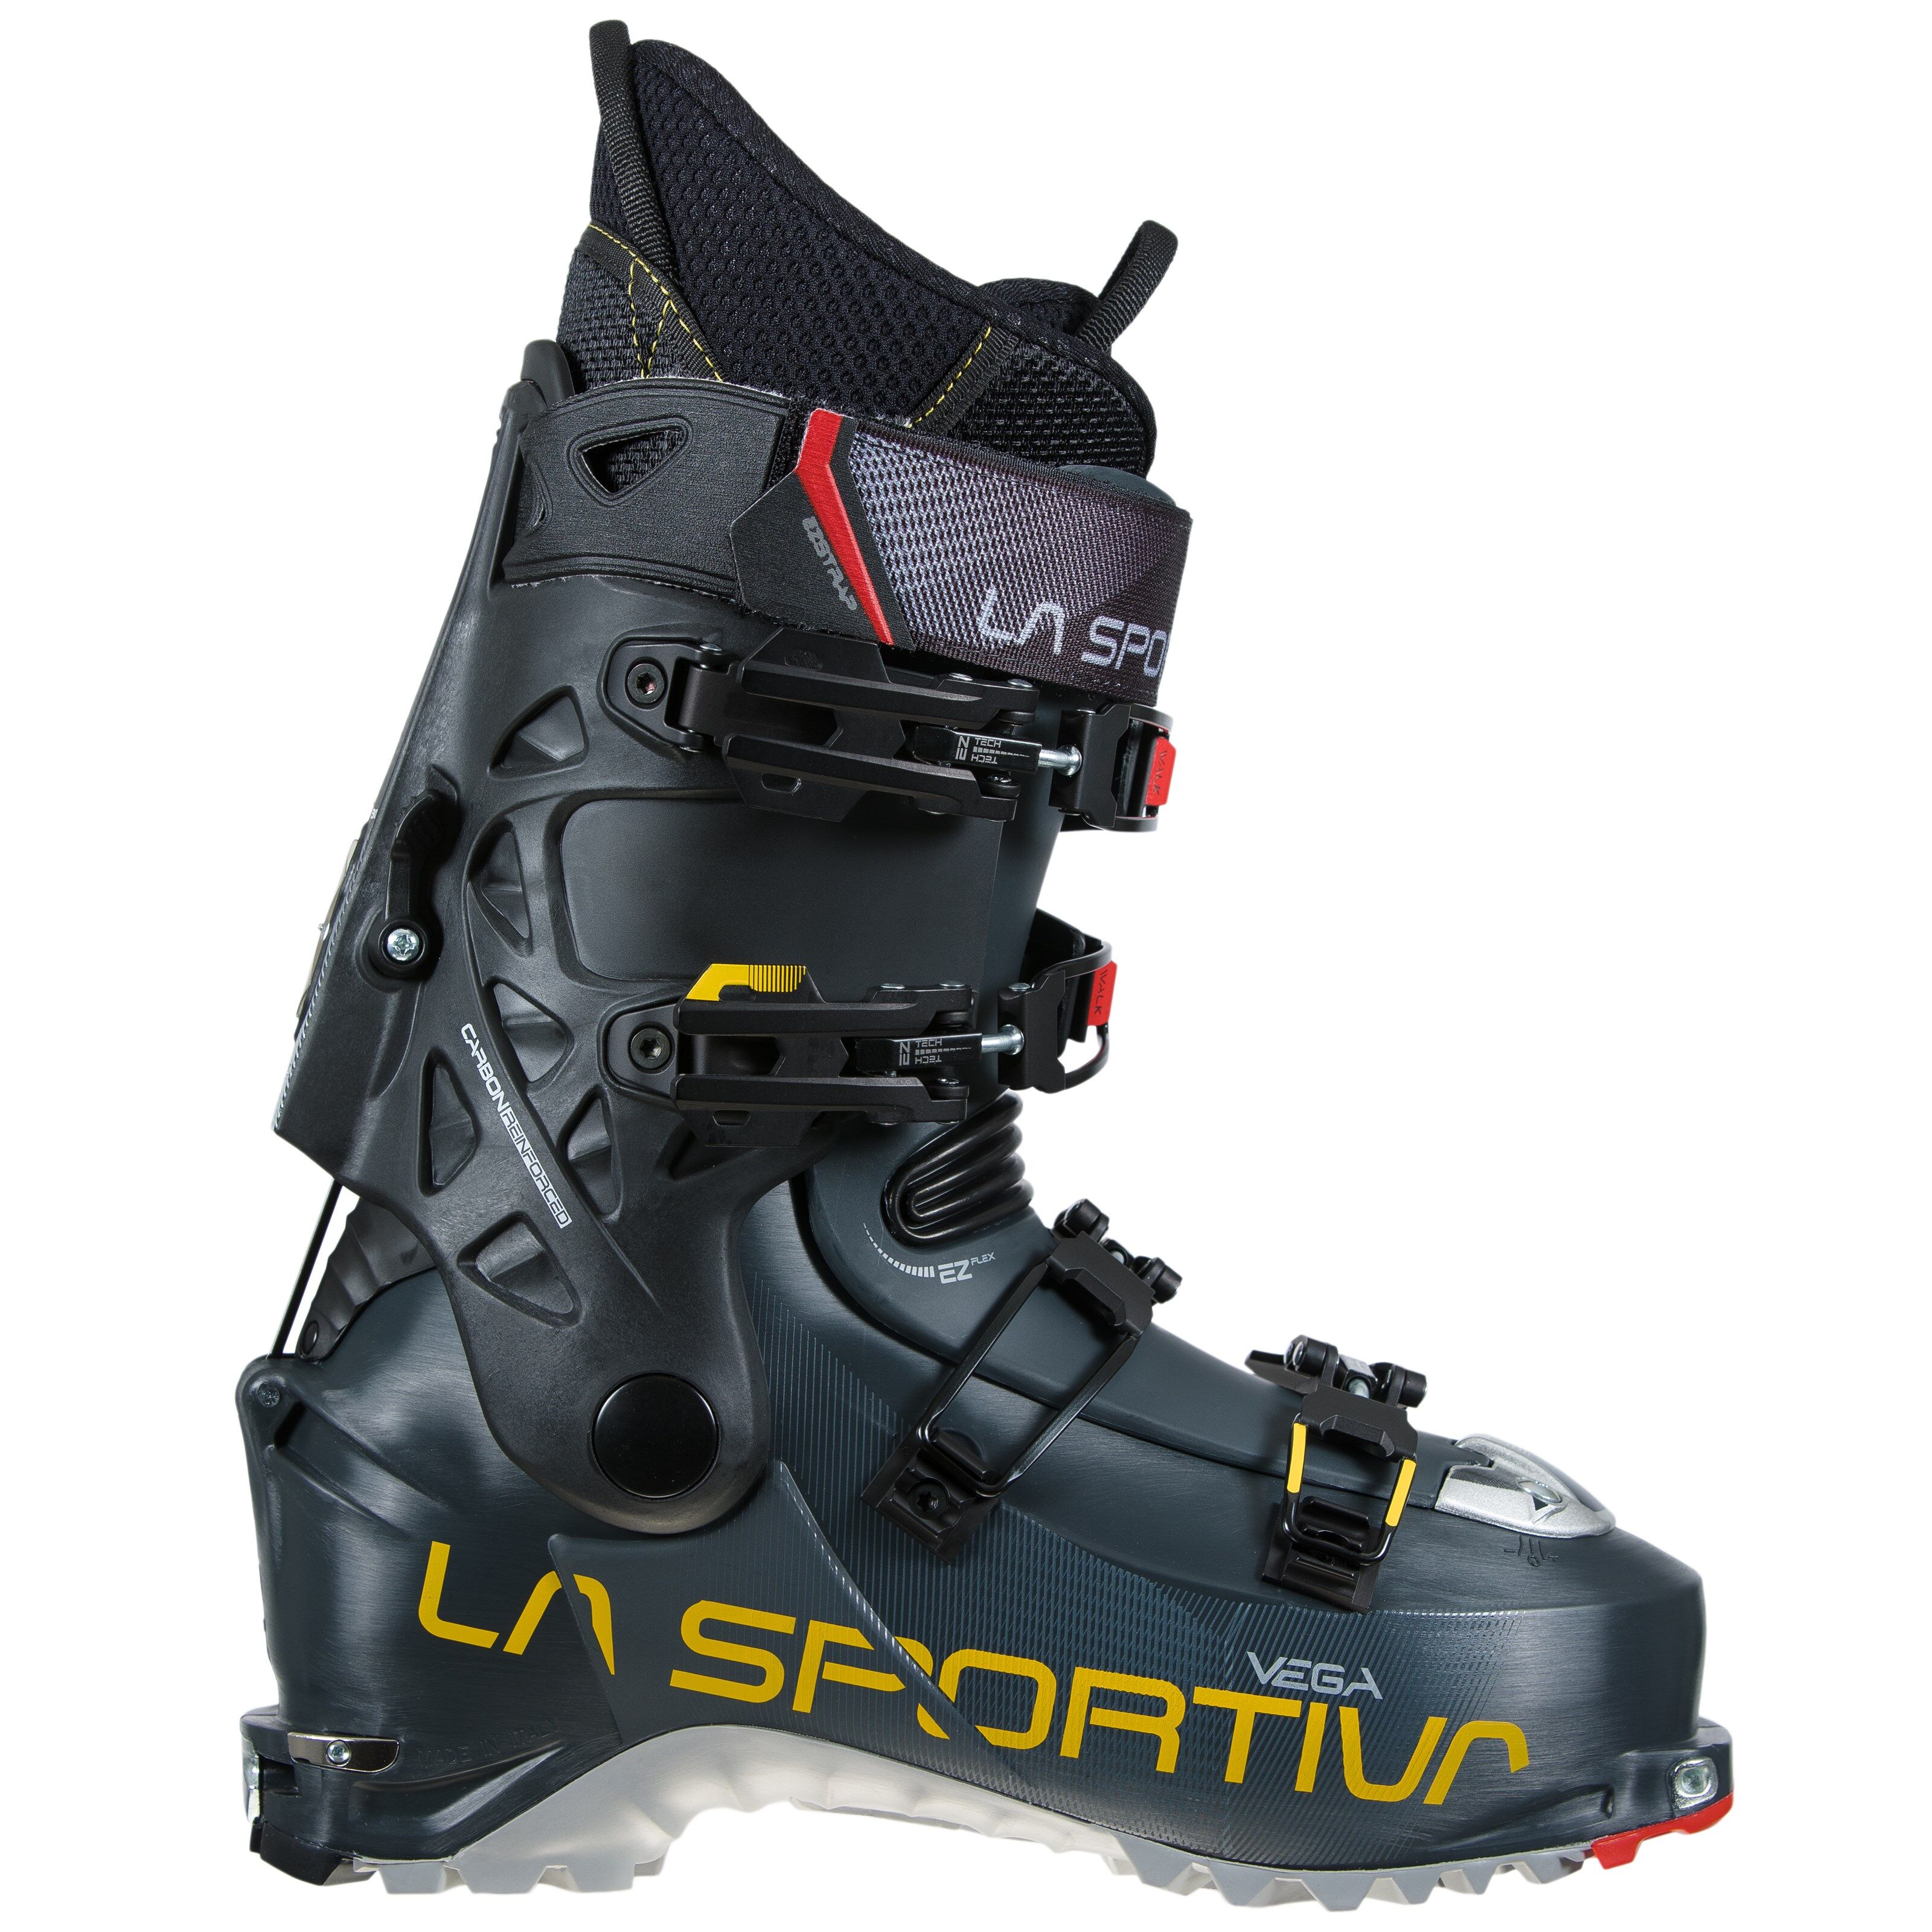 La Sportiva Vega toppturstøvler, herre 21/22 Carbon/Yellow 29 2020